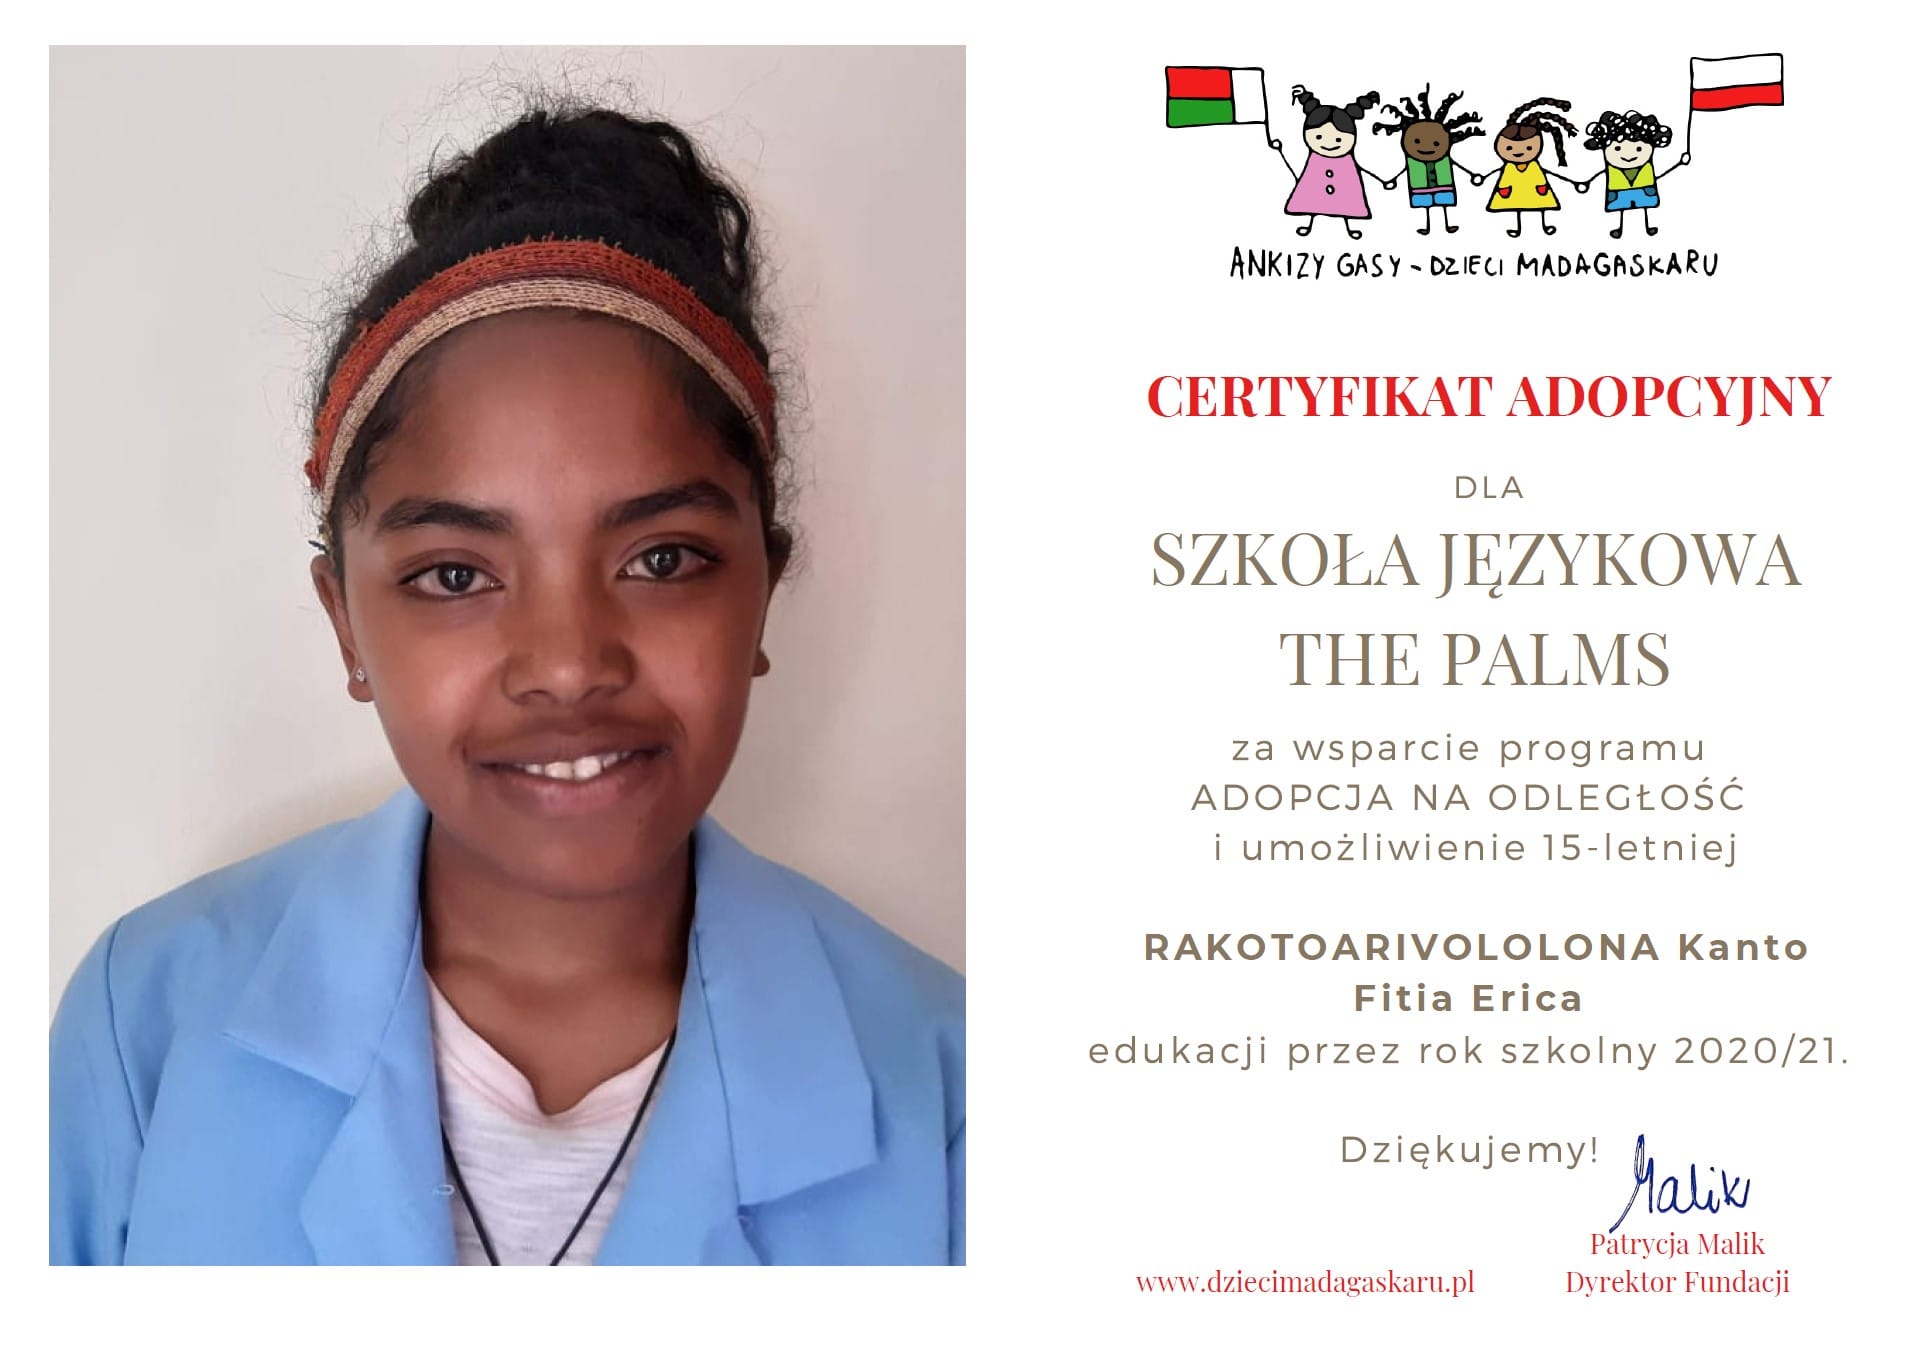 Certyfikat adopcyjny dla szkoły The Palms